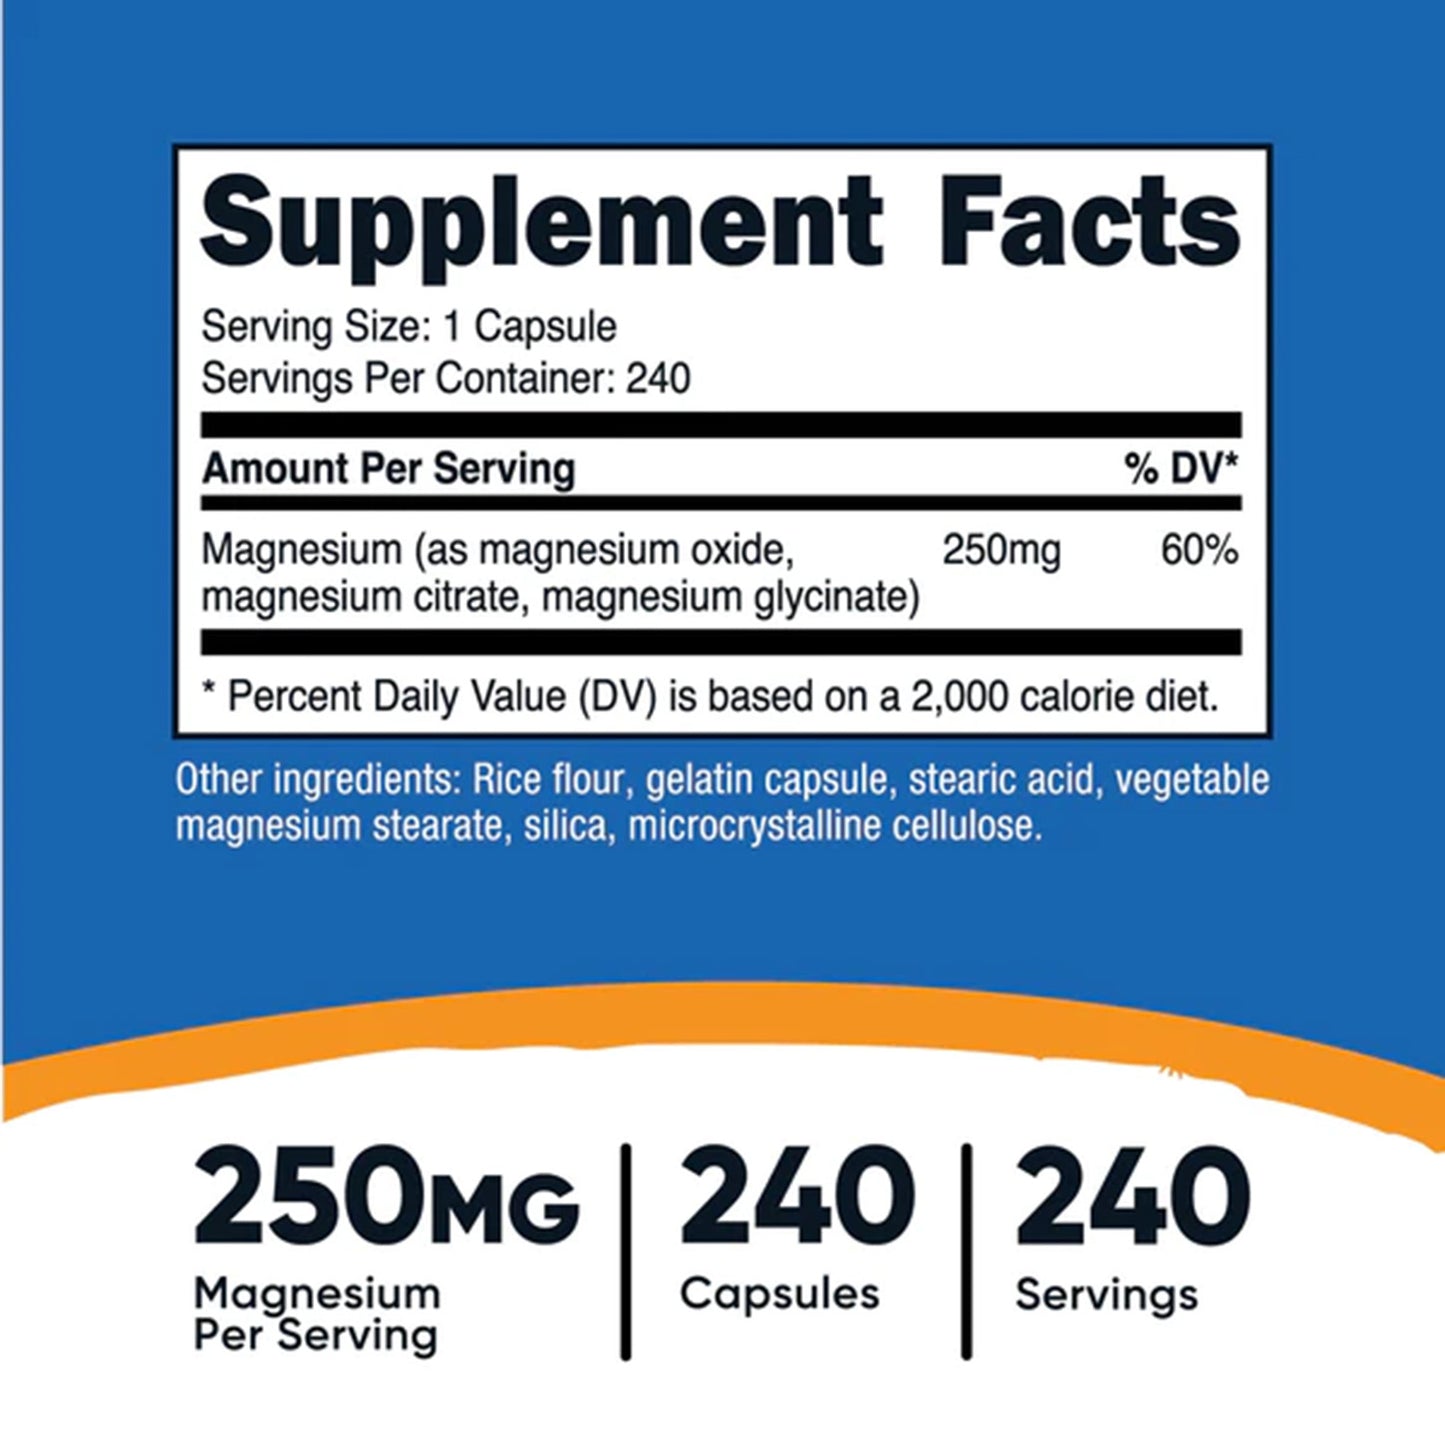 Mantén tu Salud Ósea y Muscular con Magnesium Complex Regular Strength de Nutricost | ProHealth Shop [Panamá]